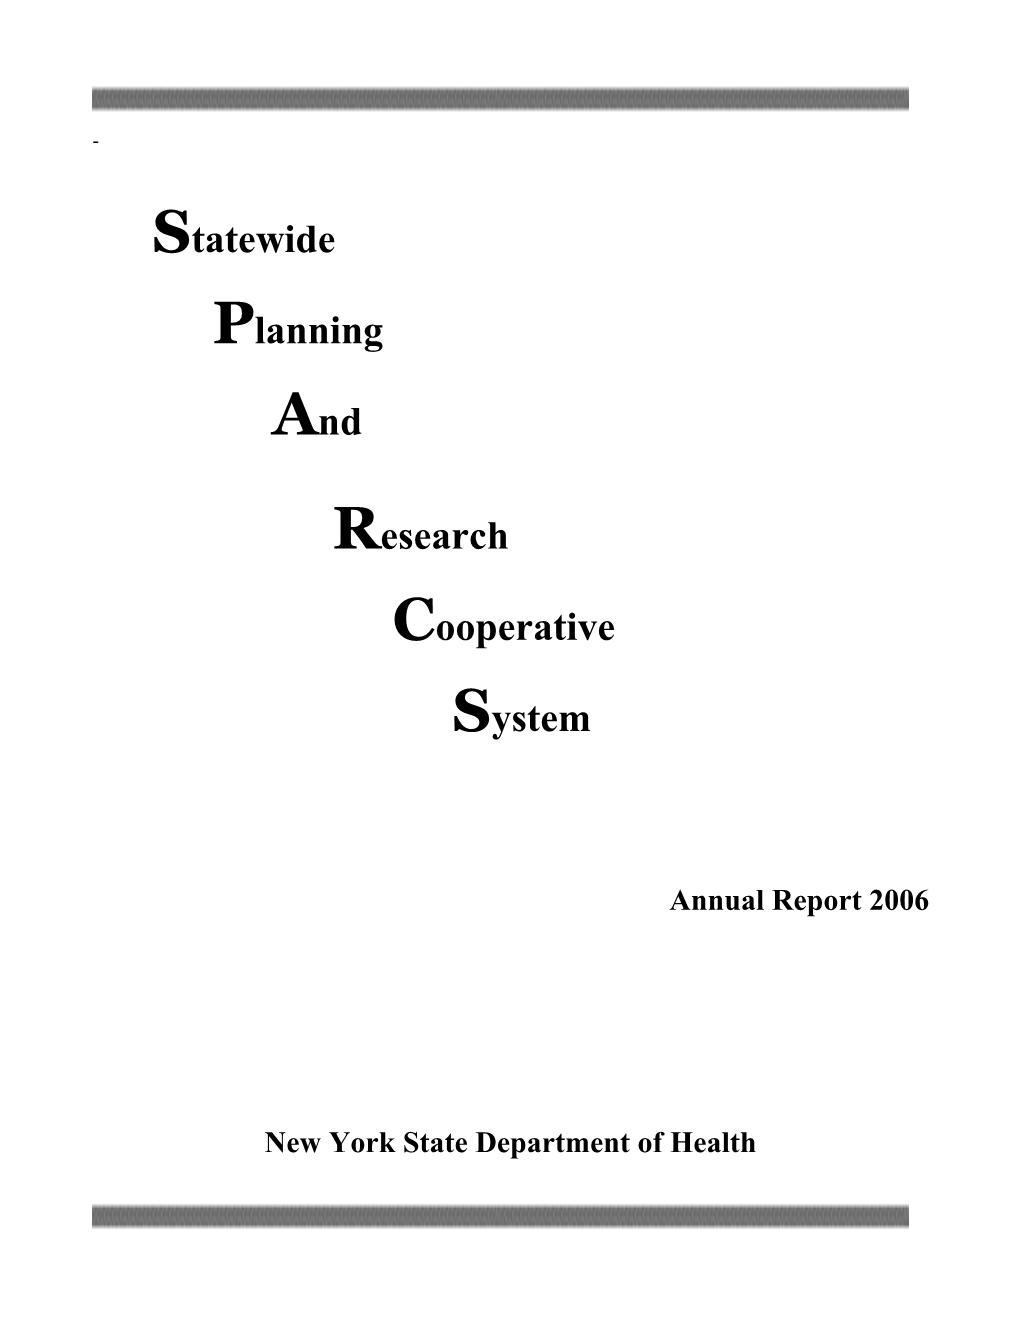 SPARCS 2006 Annual Report